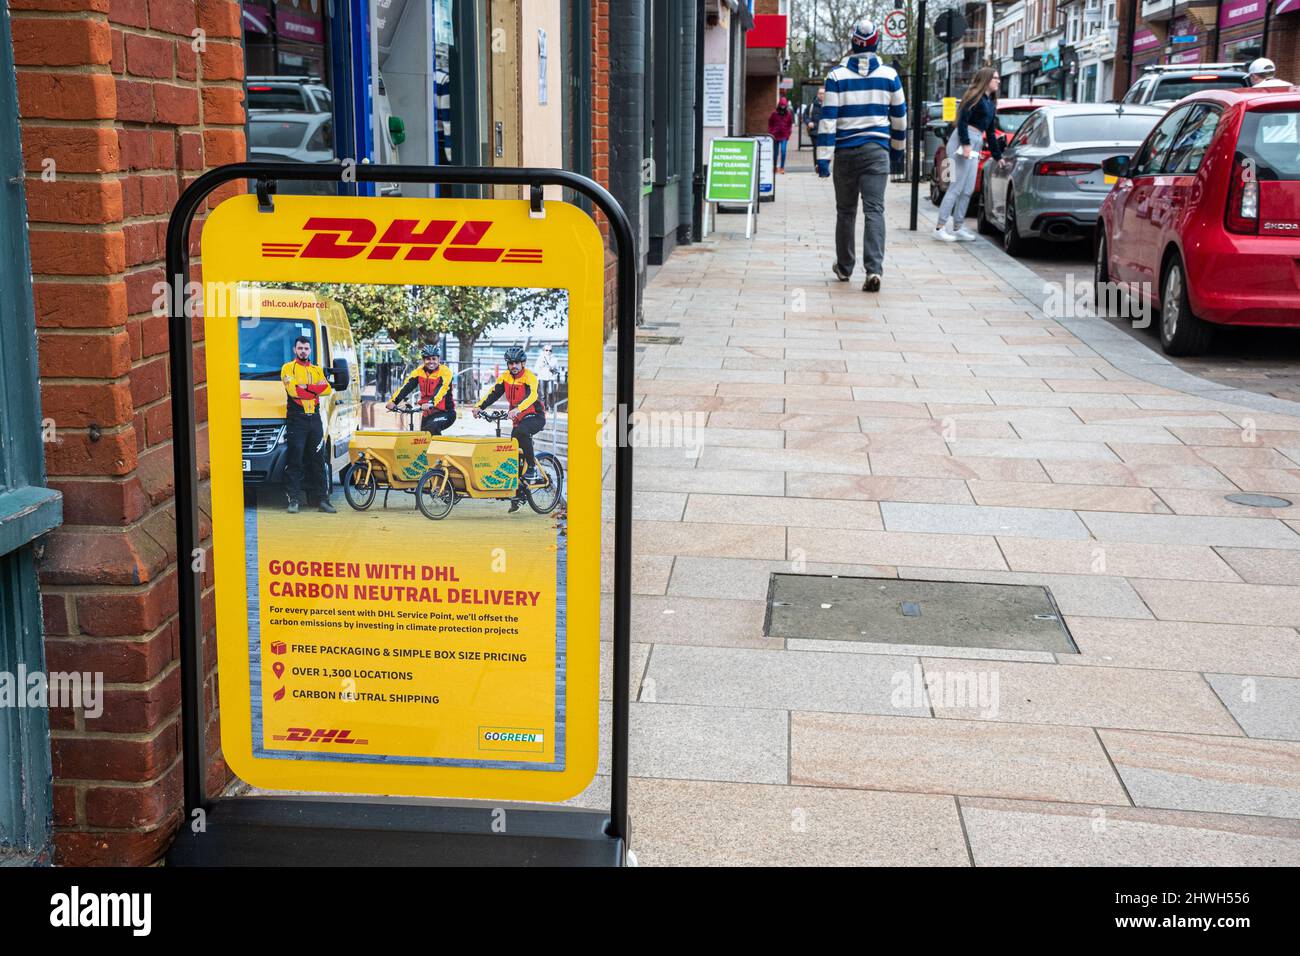 DHL signe ou A-board annonçant leur Go Green avec DHL Carbon neutre livraison plan, Camberley High Street, Surrey, Royaume-Uni Banque D'Images